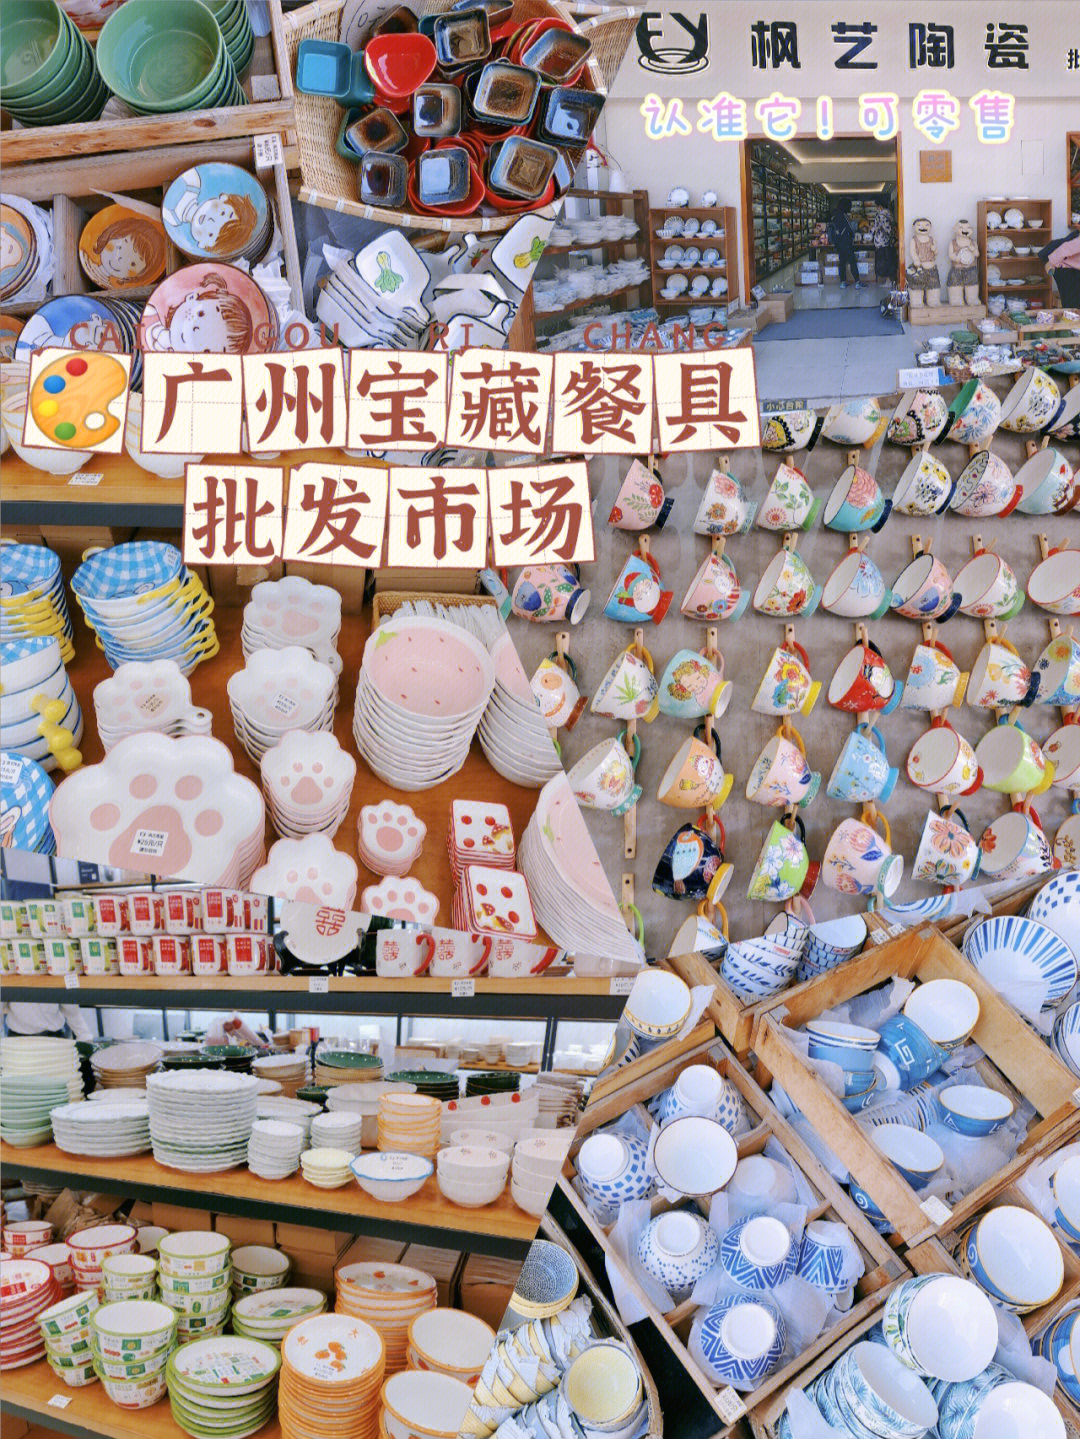 广州宝藏餐具批发市场低至3元上千款